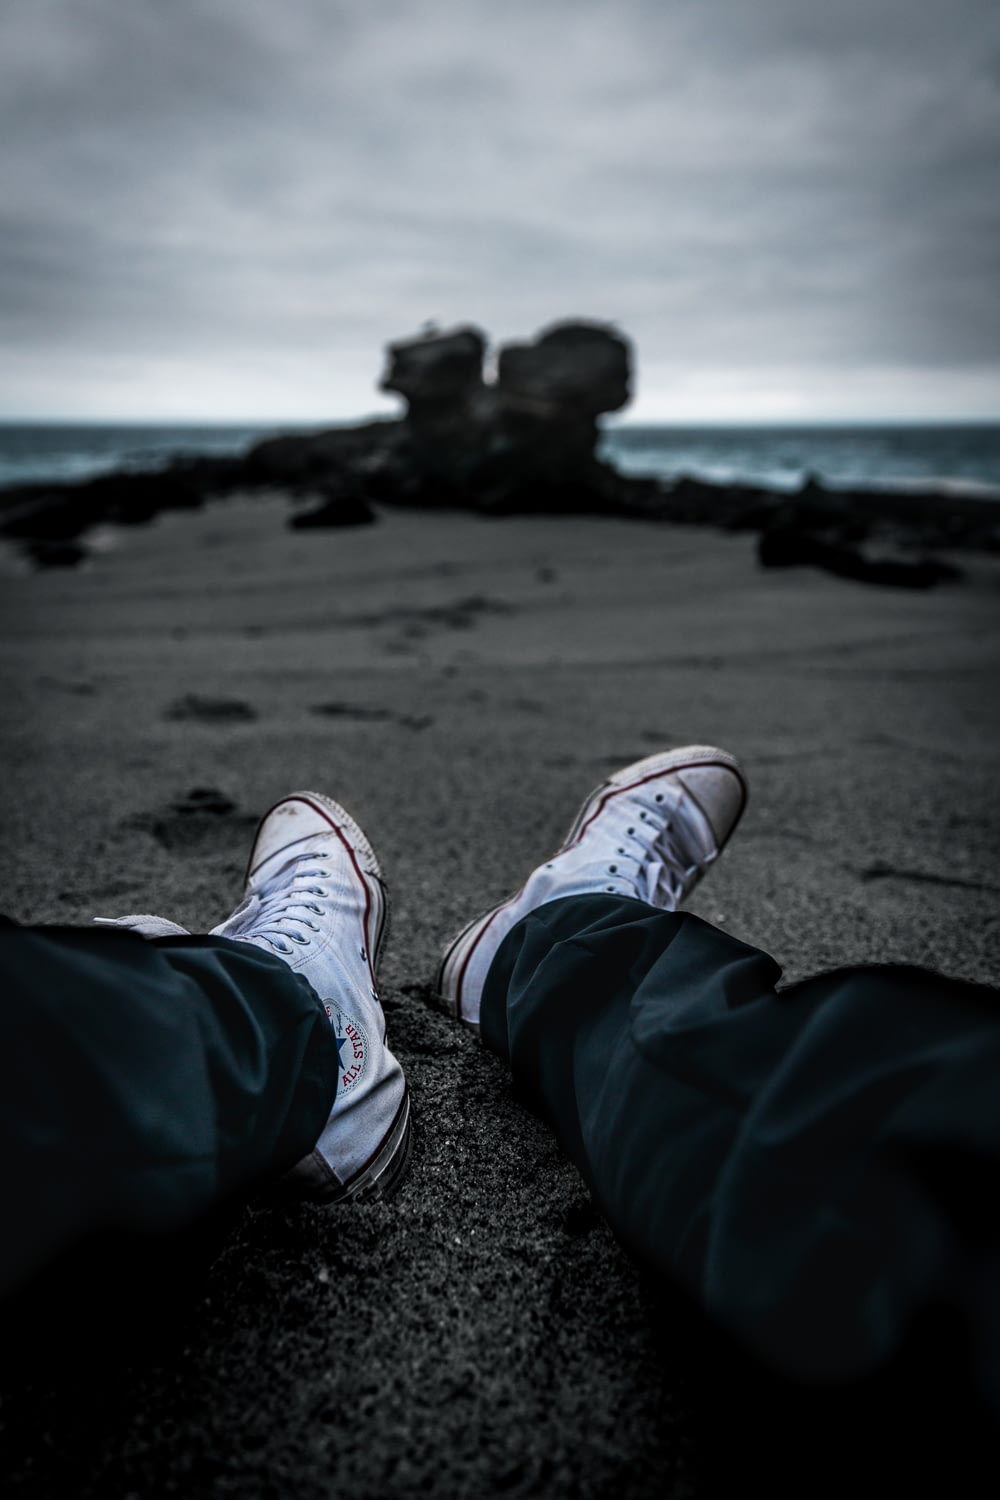 a person's feet on a beach